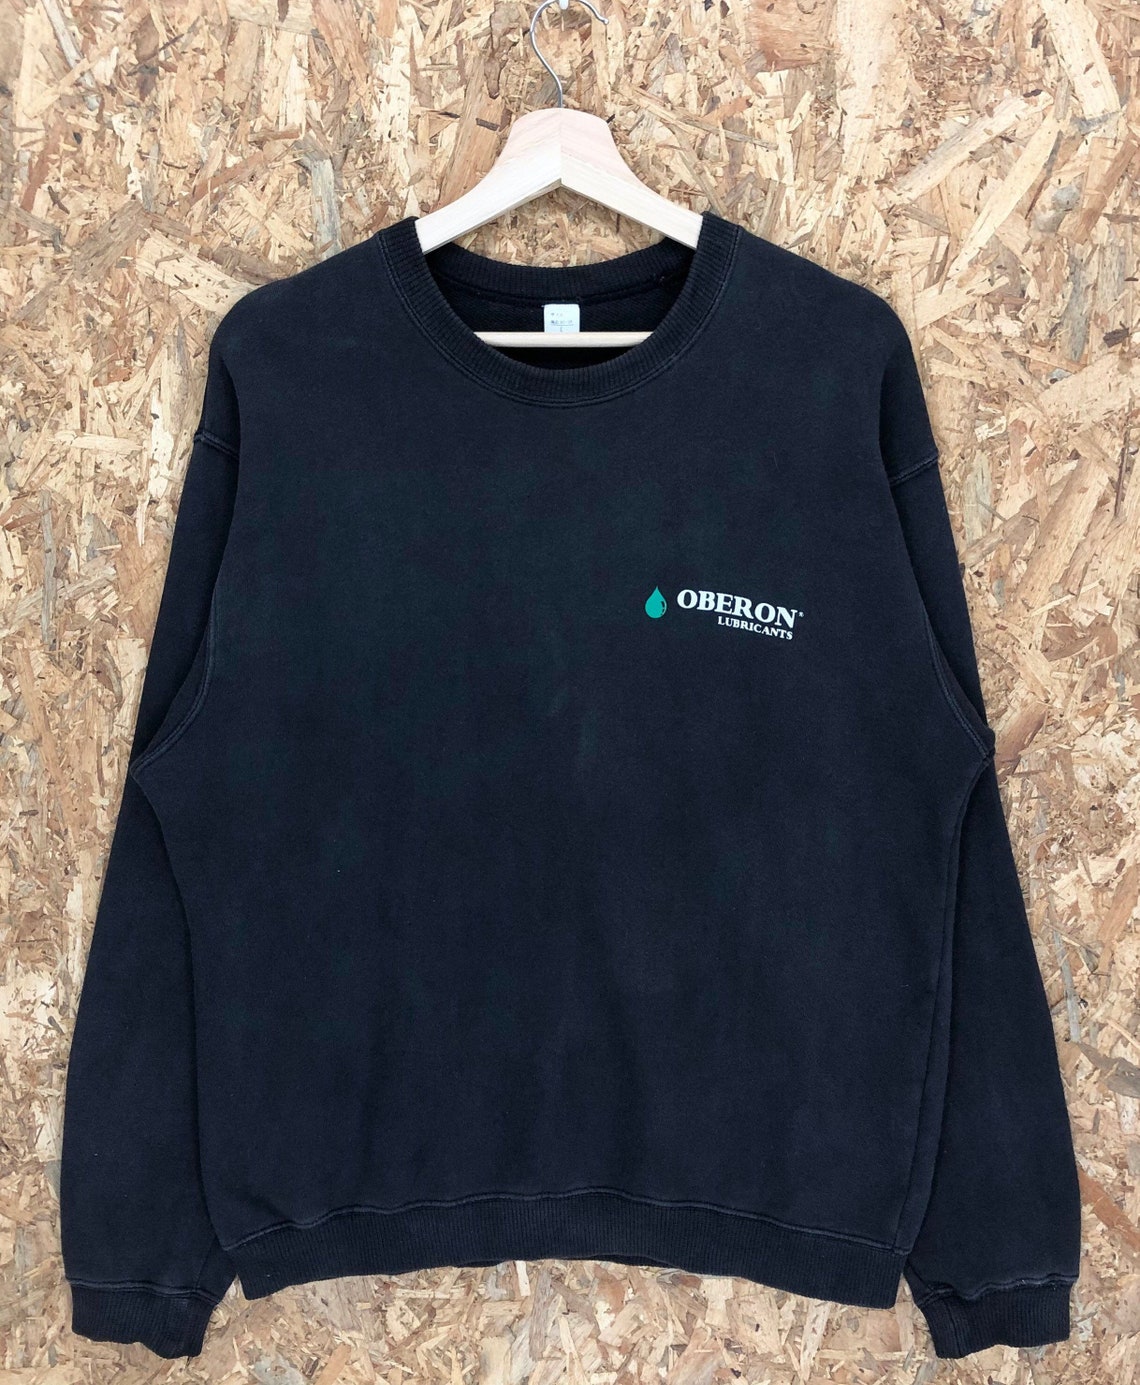 Vintage Oberon Lubricants Crewneck Sweatshirt | Etsy